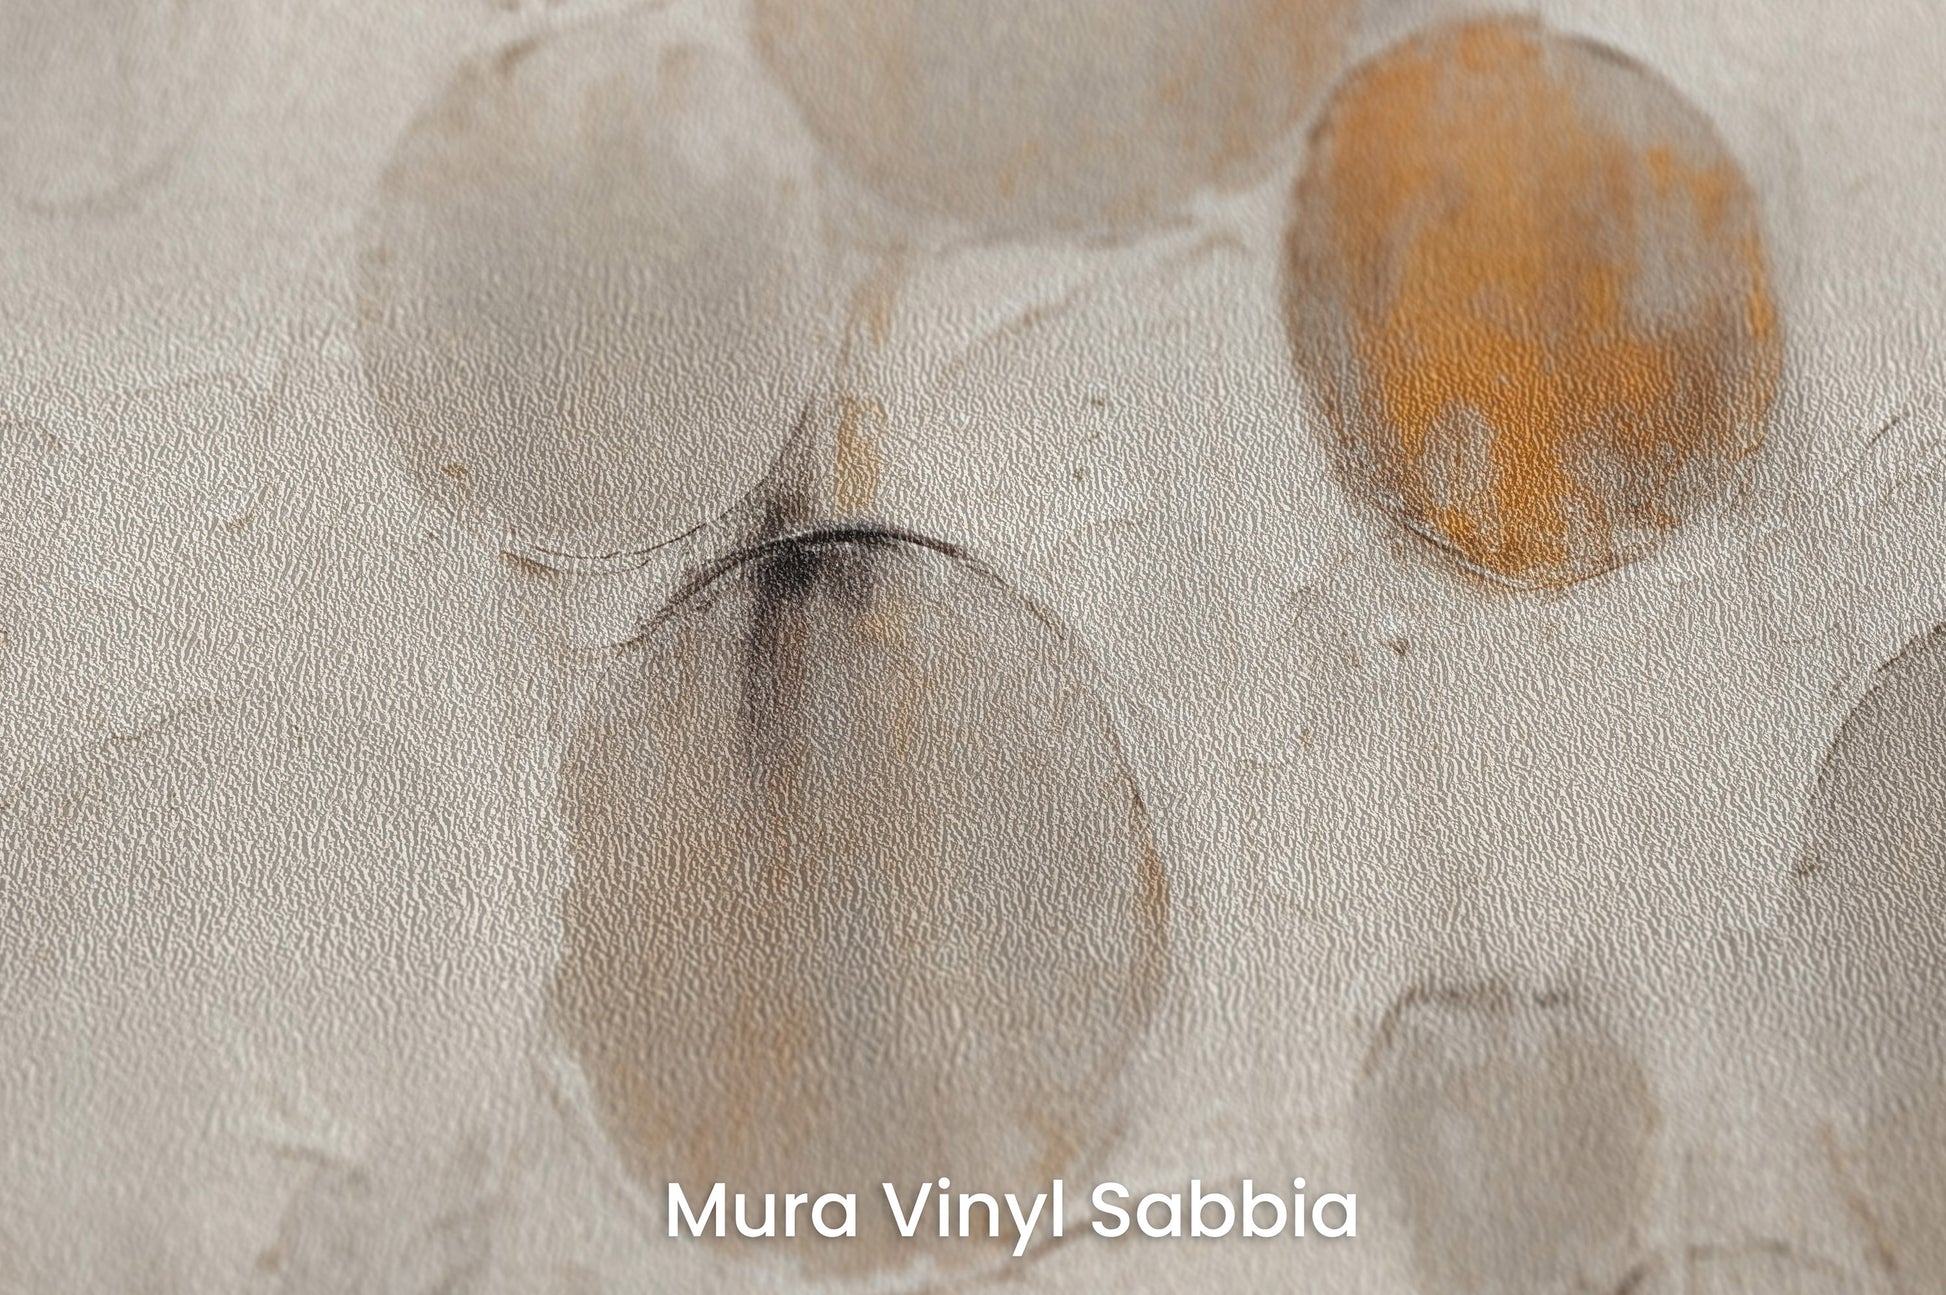 Zbliżenie na artystyczną fototapetę o nazwie RUSTIC ASTRAL SPHERES na podłożu Mura Vinyl Sabbia struktura grubego ziarna piasku.